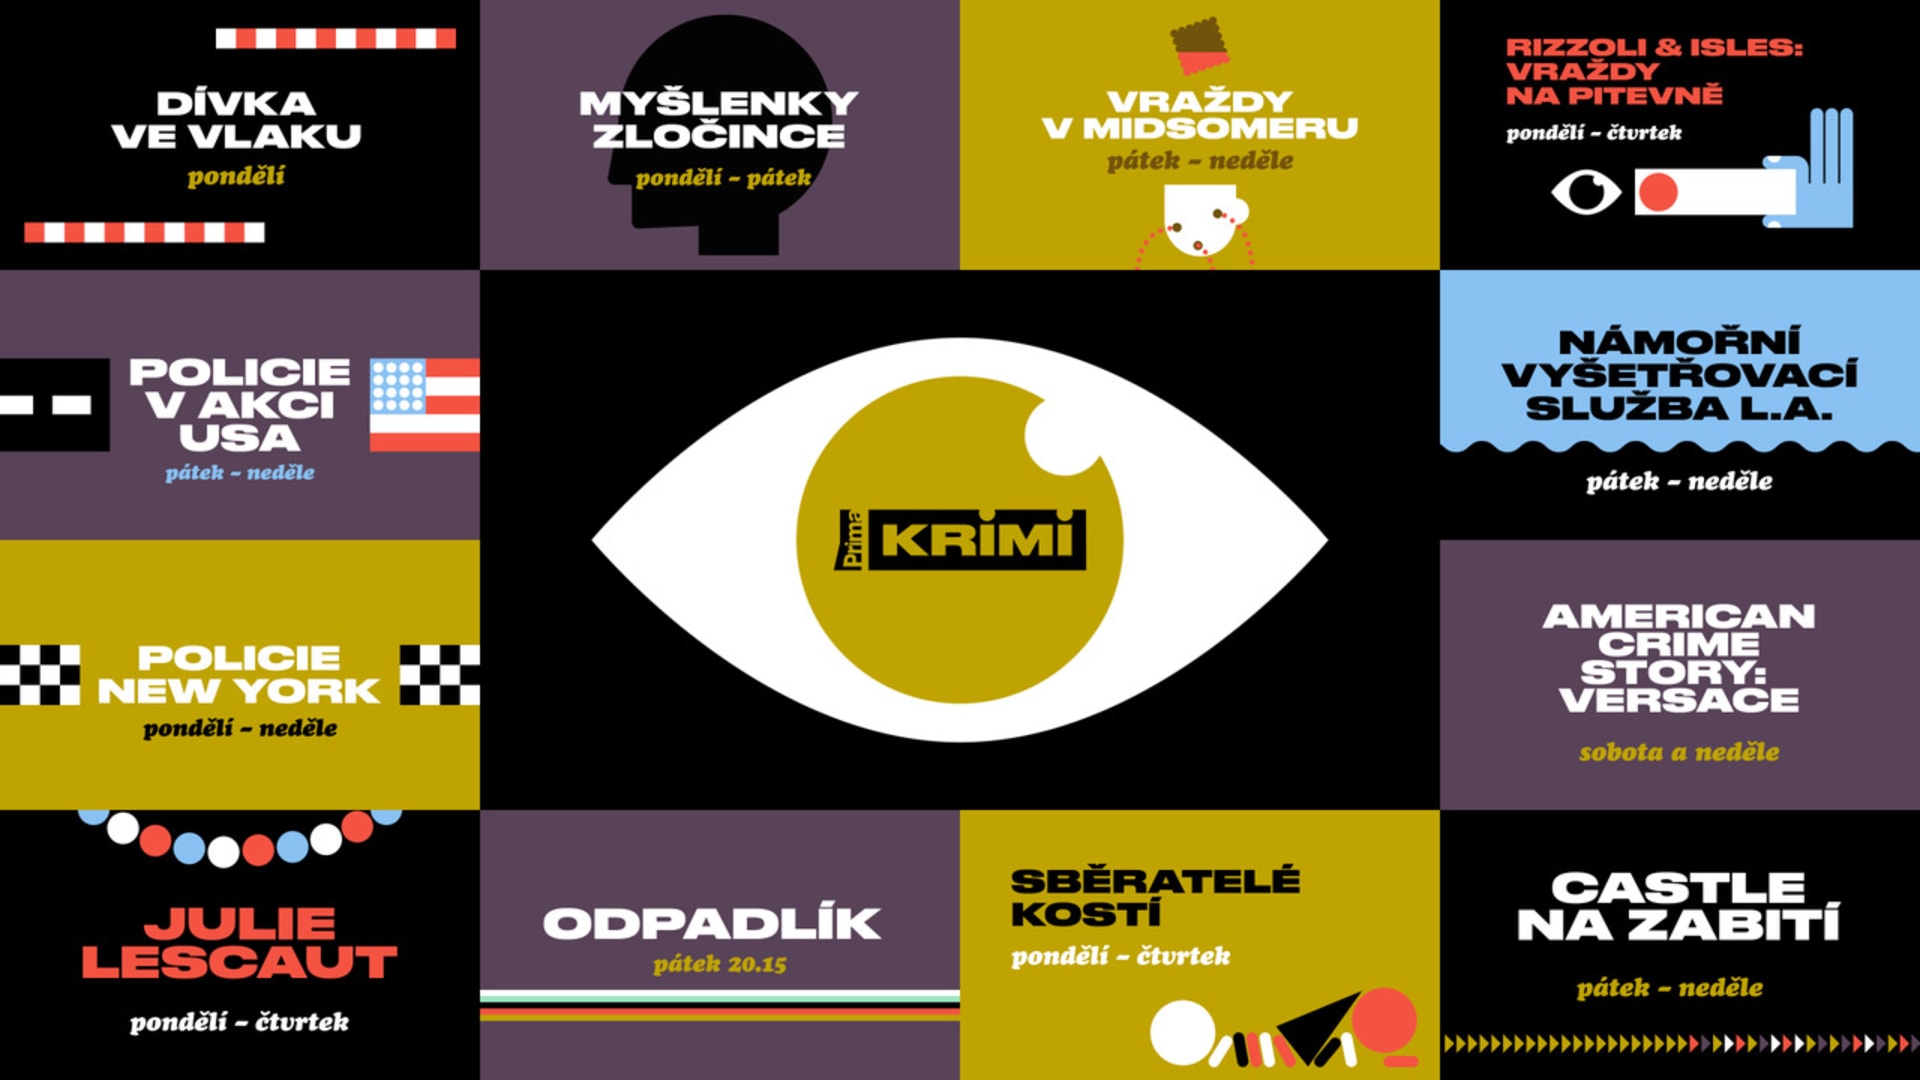 Hlavní grafický motiv kanálu Prima KRIMI je oko, které je neustále zvídavé a pátrající.